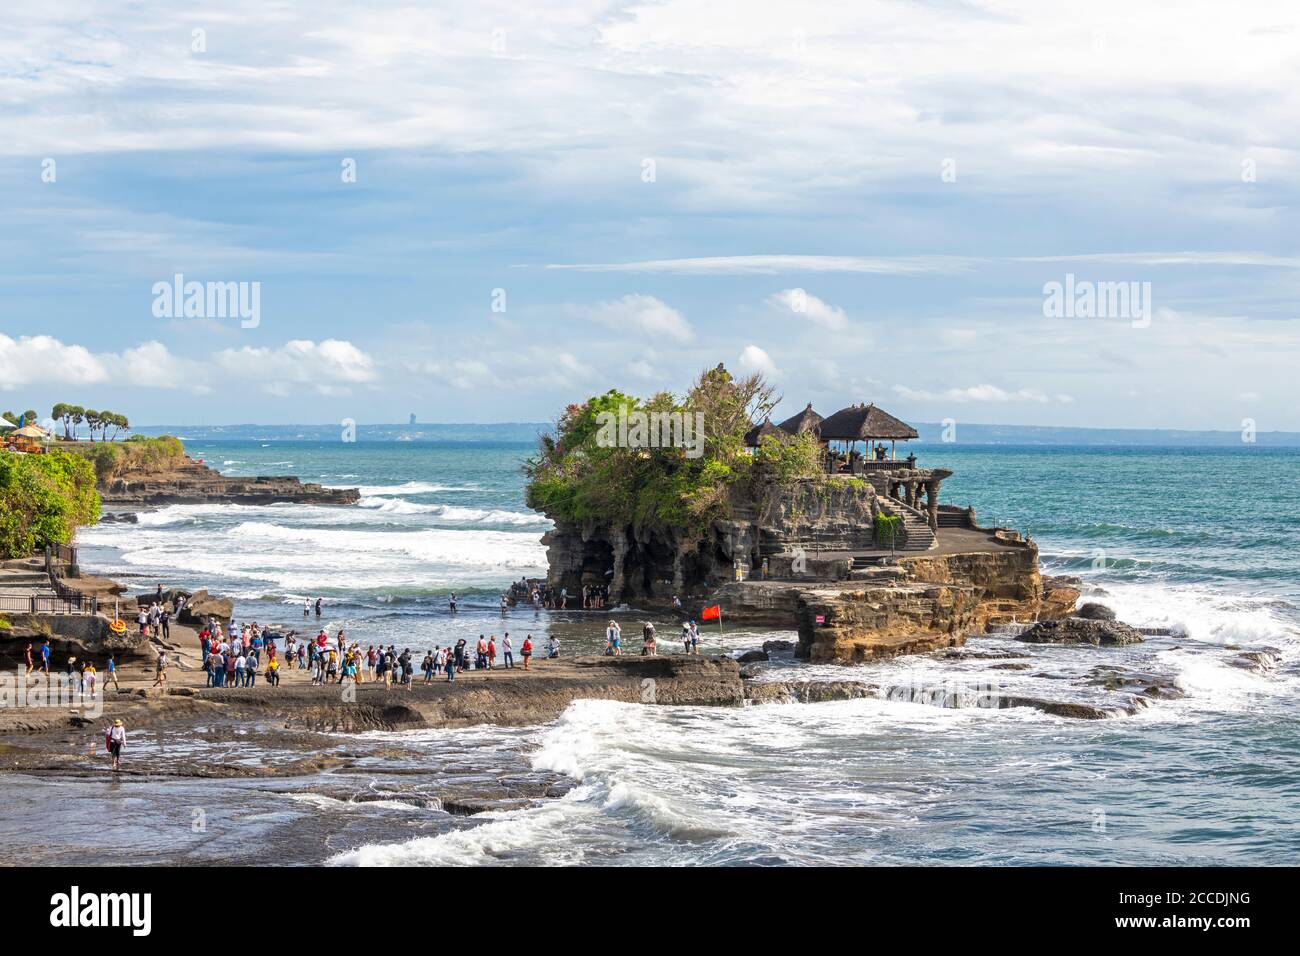 Tanah Lot è una piccola isola rocciosa al largo dell'isola indonesiana di Bali. È sede dell'antico tempio indù di pellegrinaggio pura Tanah Lot o Tanah Lot temp Foto Stock